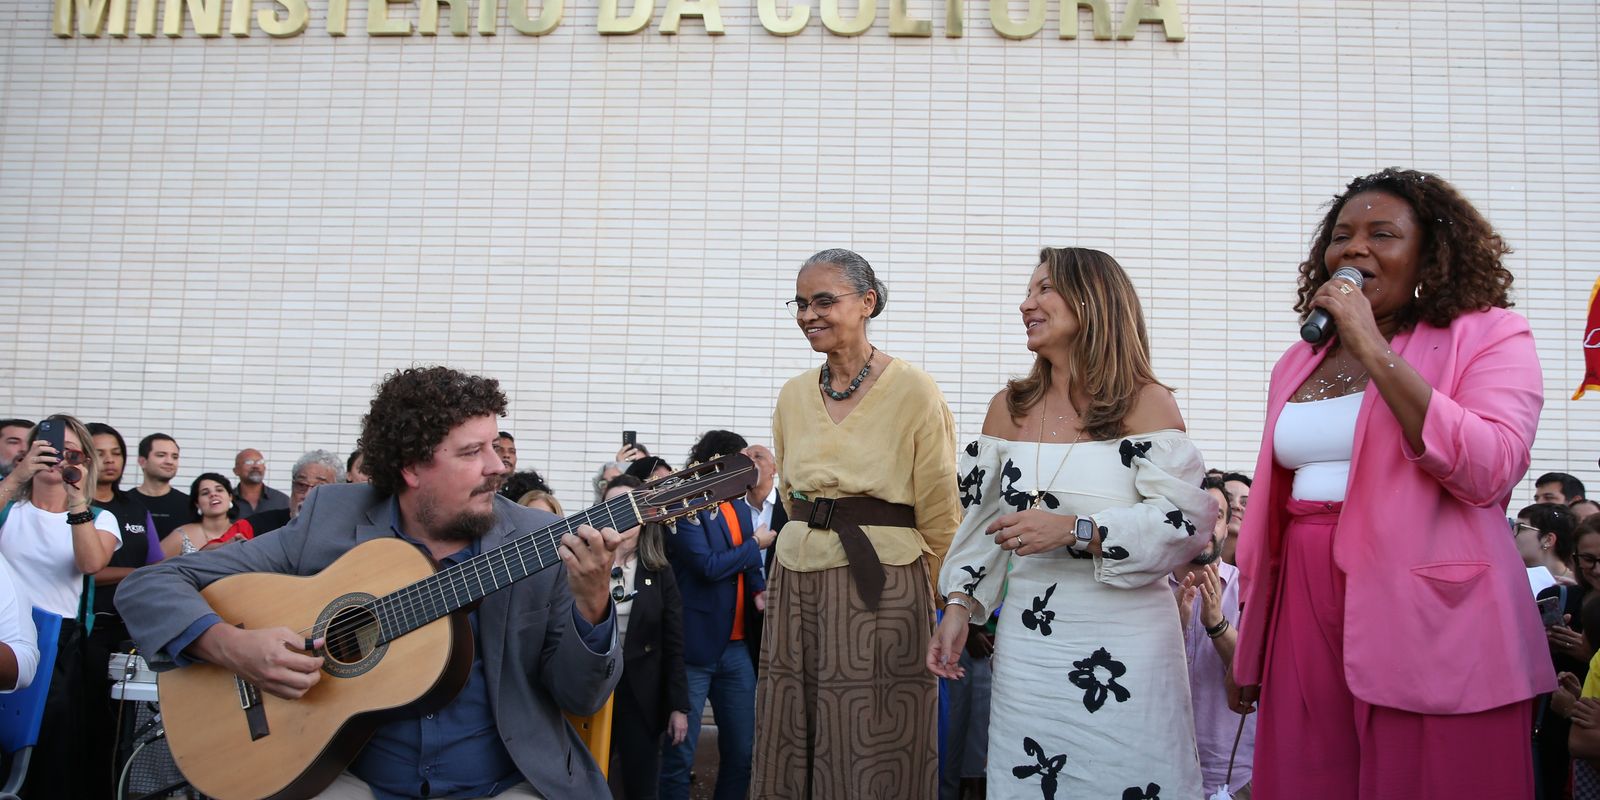 Cultura é do povo brasileiro e precisa ser respeitada, diz ministra